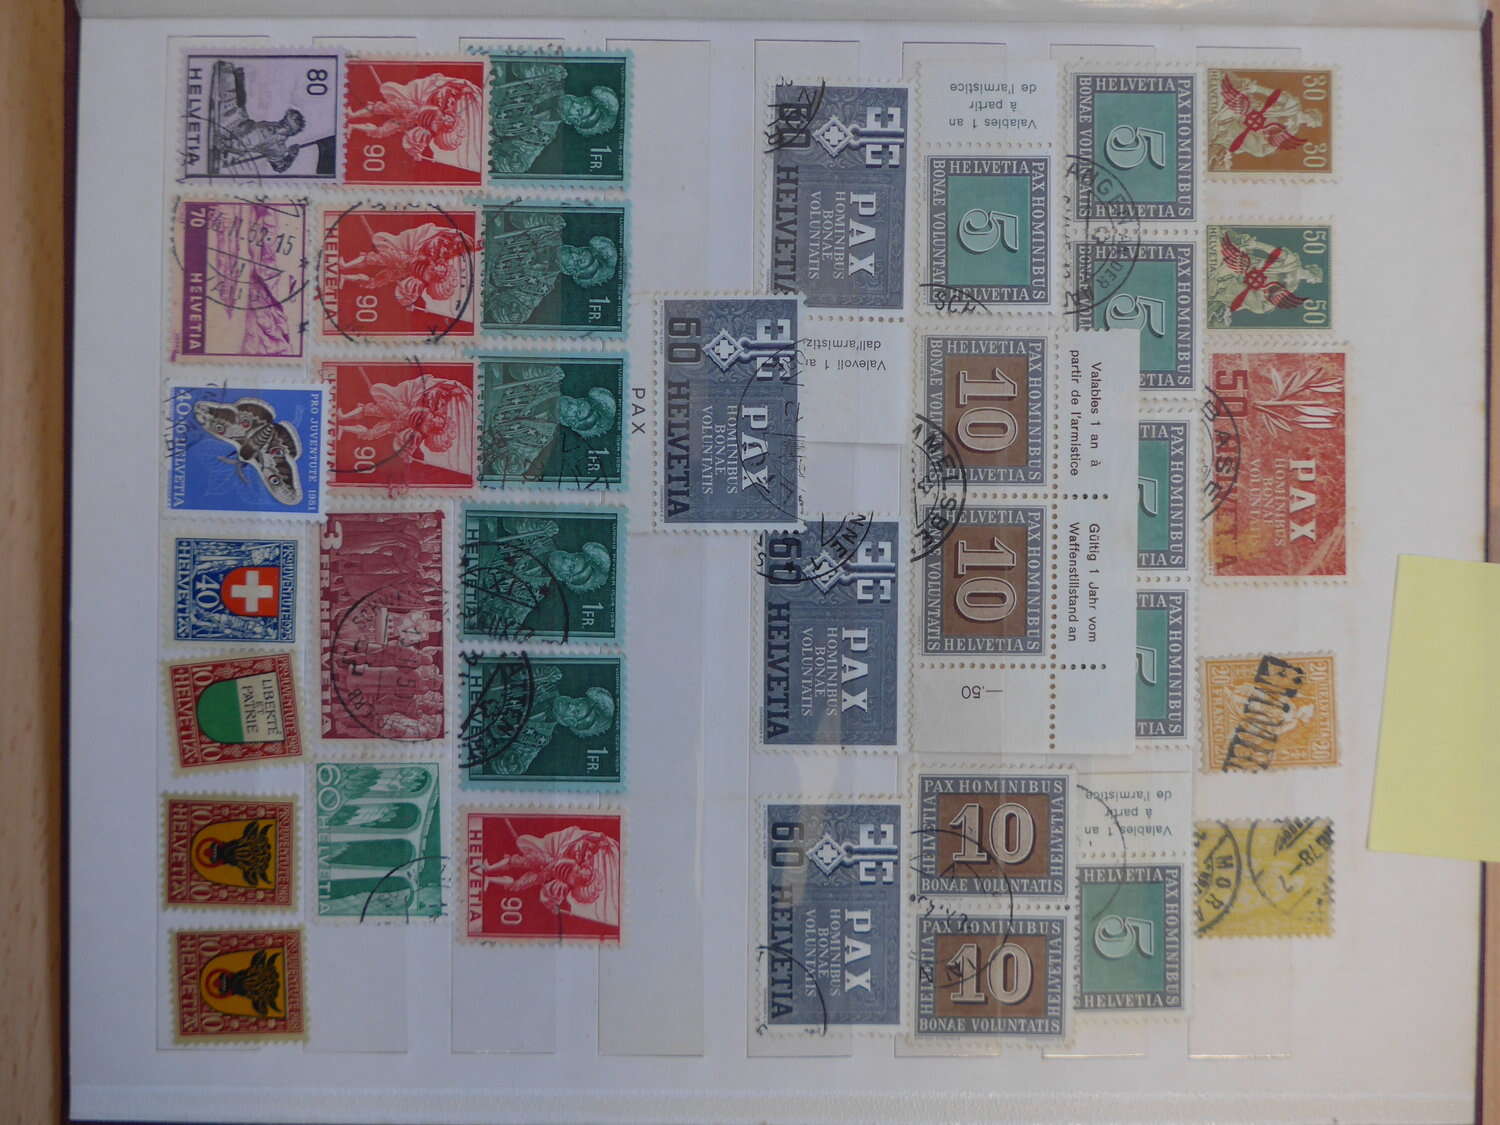 Lot 26 - sammlungen und posten händlernachlässe -  Deutsche Briefmarken AG 6th Large Lot Auction Deutsche Briefmarken AG